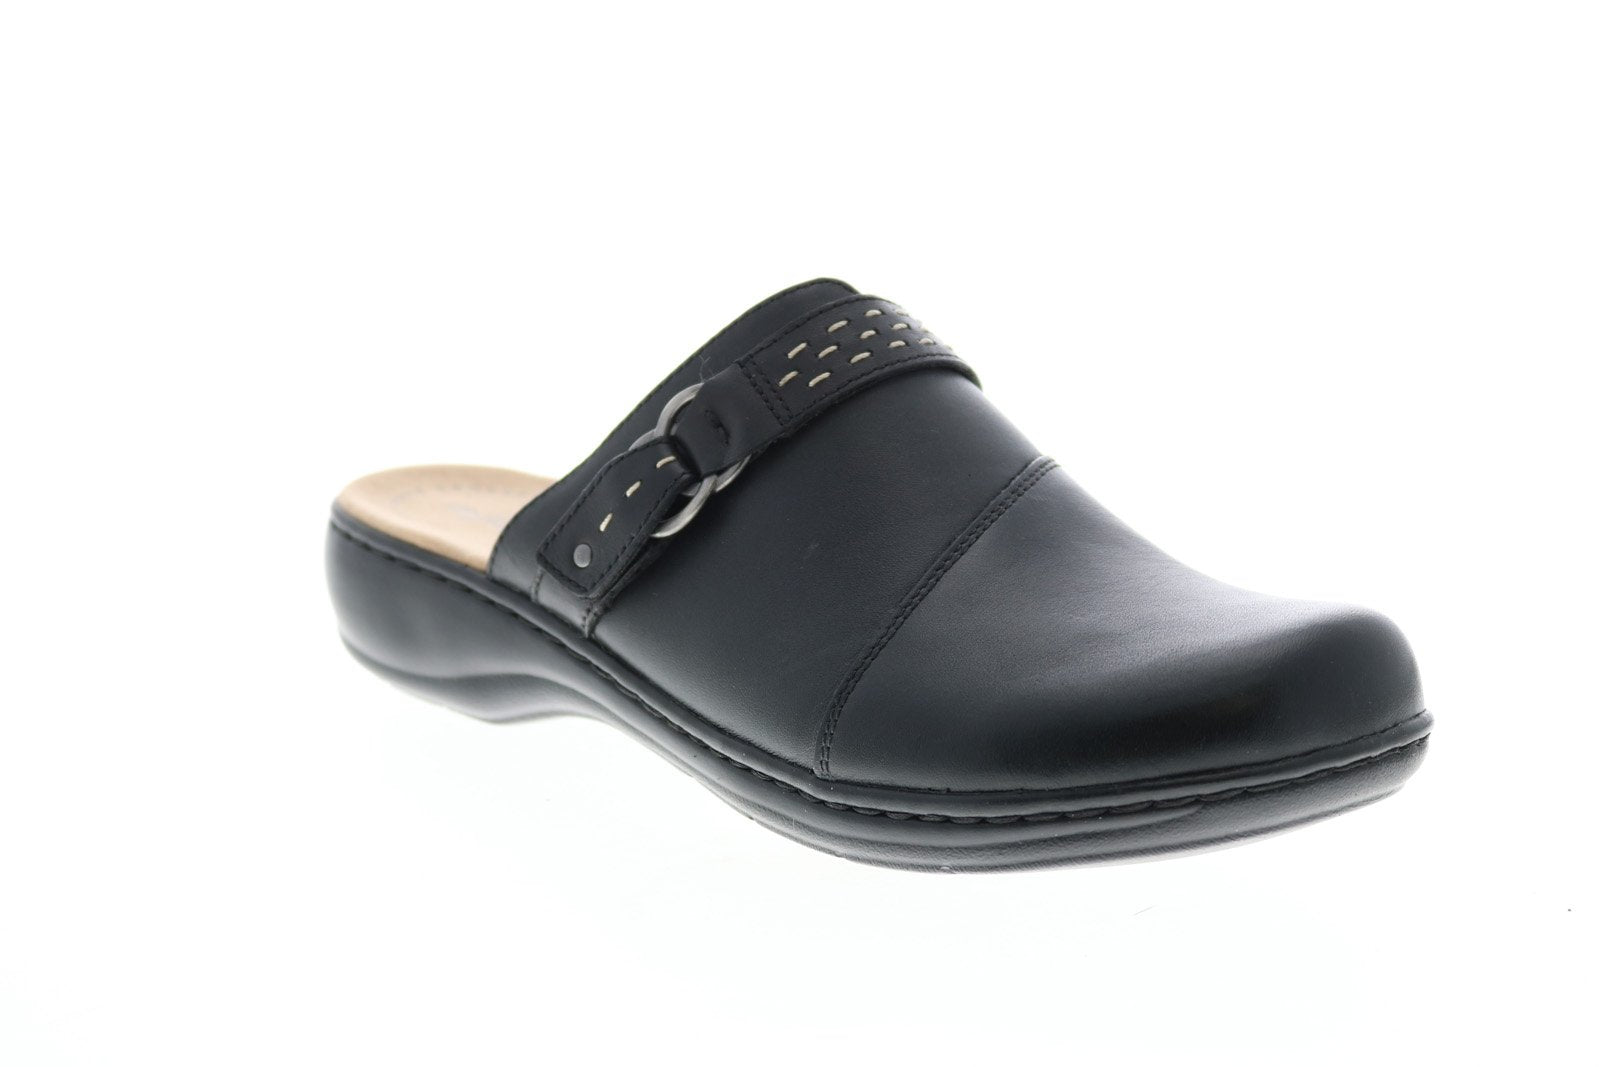 Clarks Leisa Sadie Leather 26128995 Womens Black Flip-Flops Sandals Sh ...